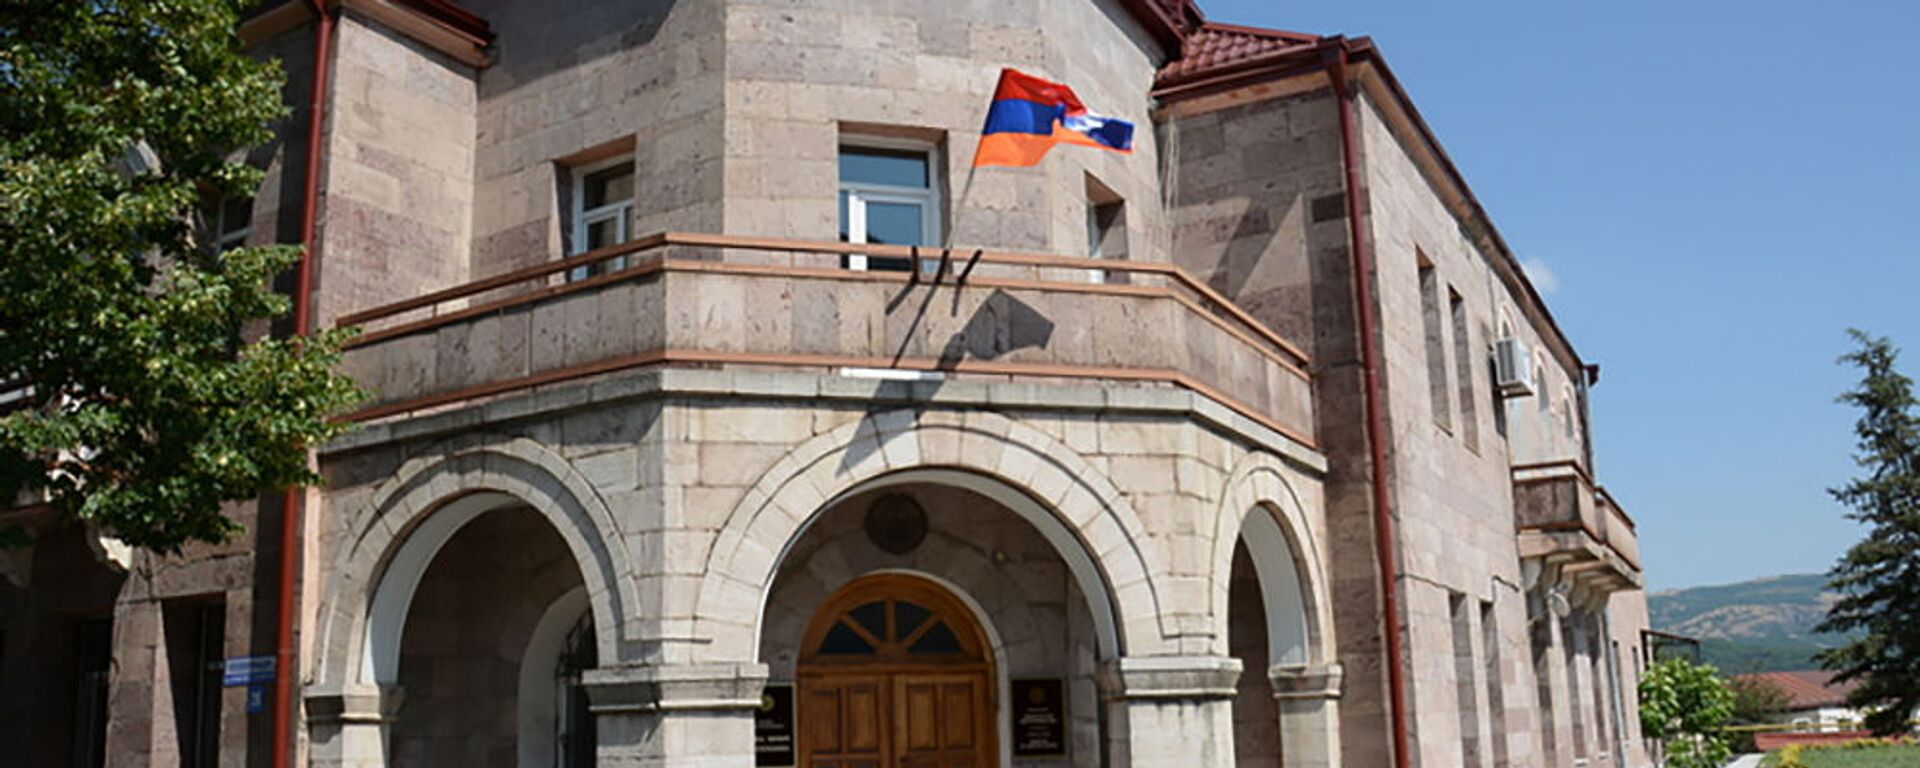 Здание Министерства иностранных дел Карабаха - Sputnik Արմենիա, 1920, 10.08.2021